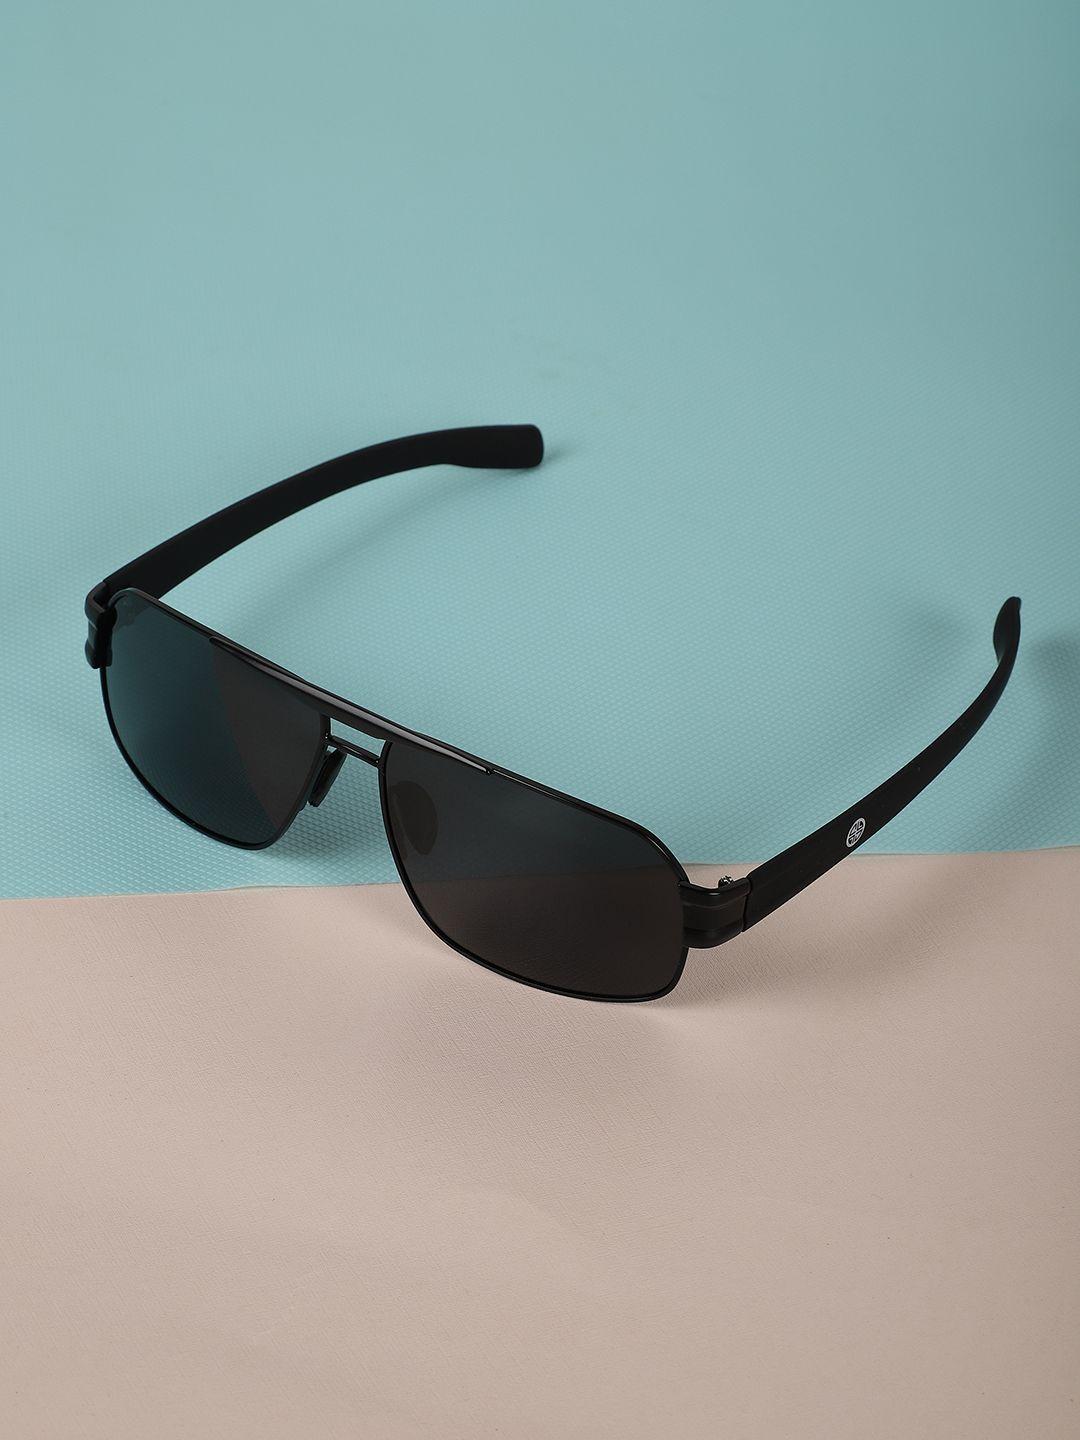 carlton-london-men-polarised-rectangle-sunglasses-p3258-c3